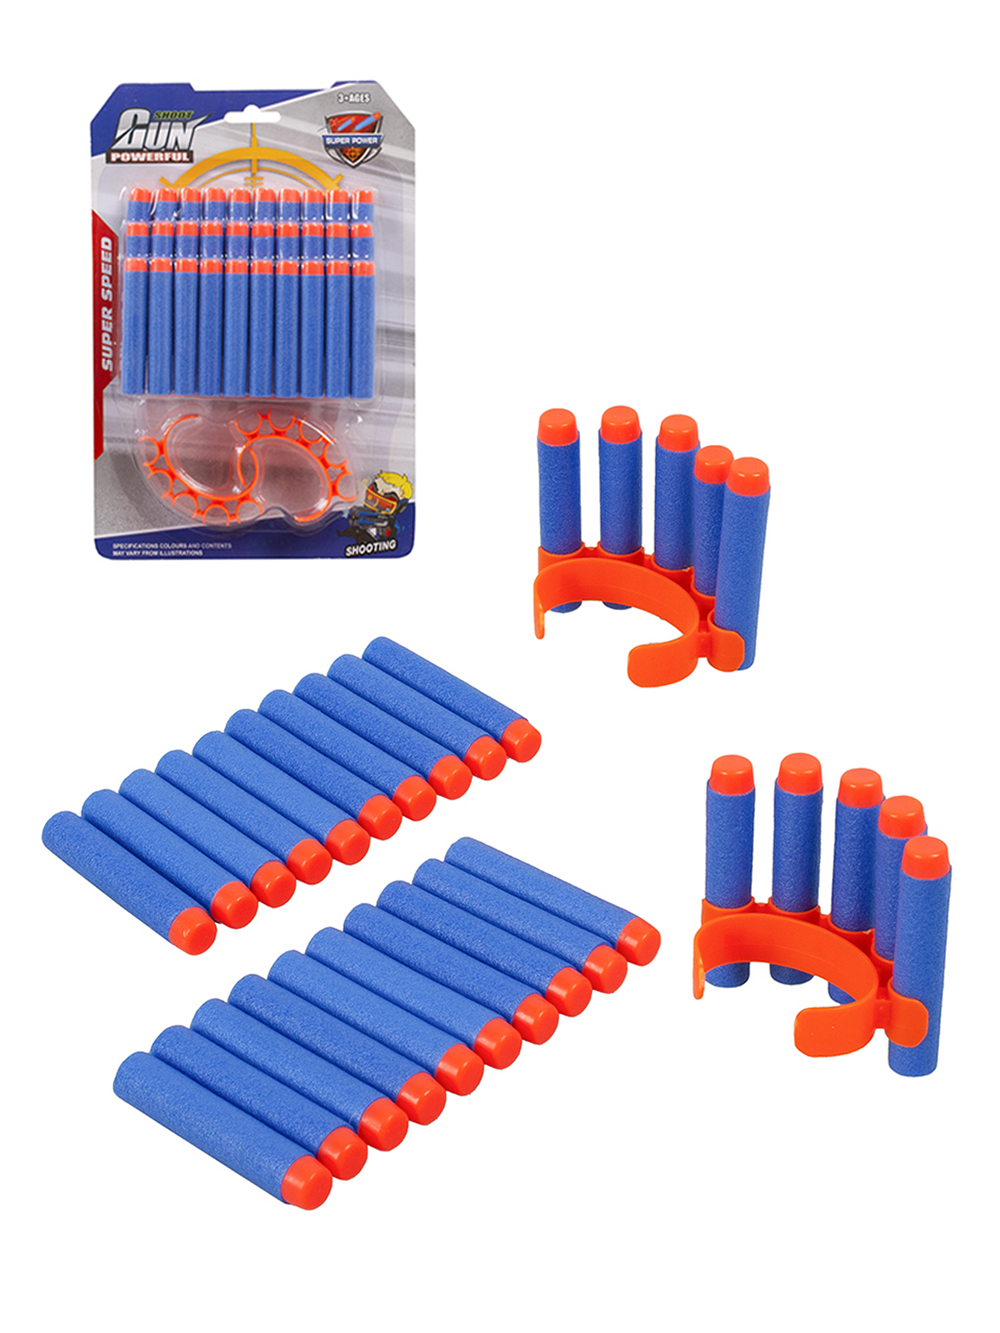 Мягкие пули для игрушечного бластера 694-2 набор 30 штук